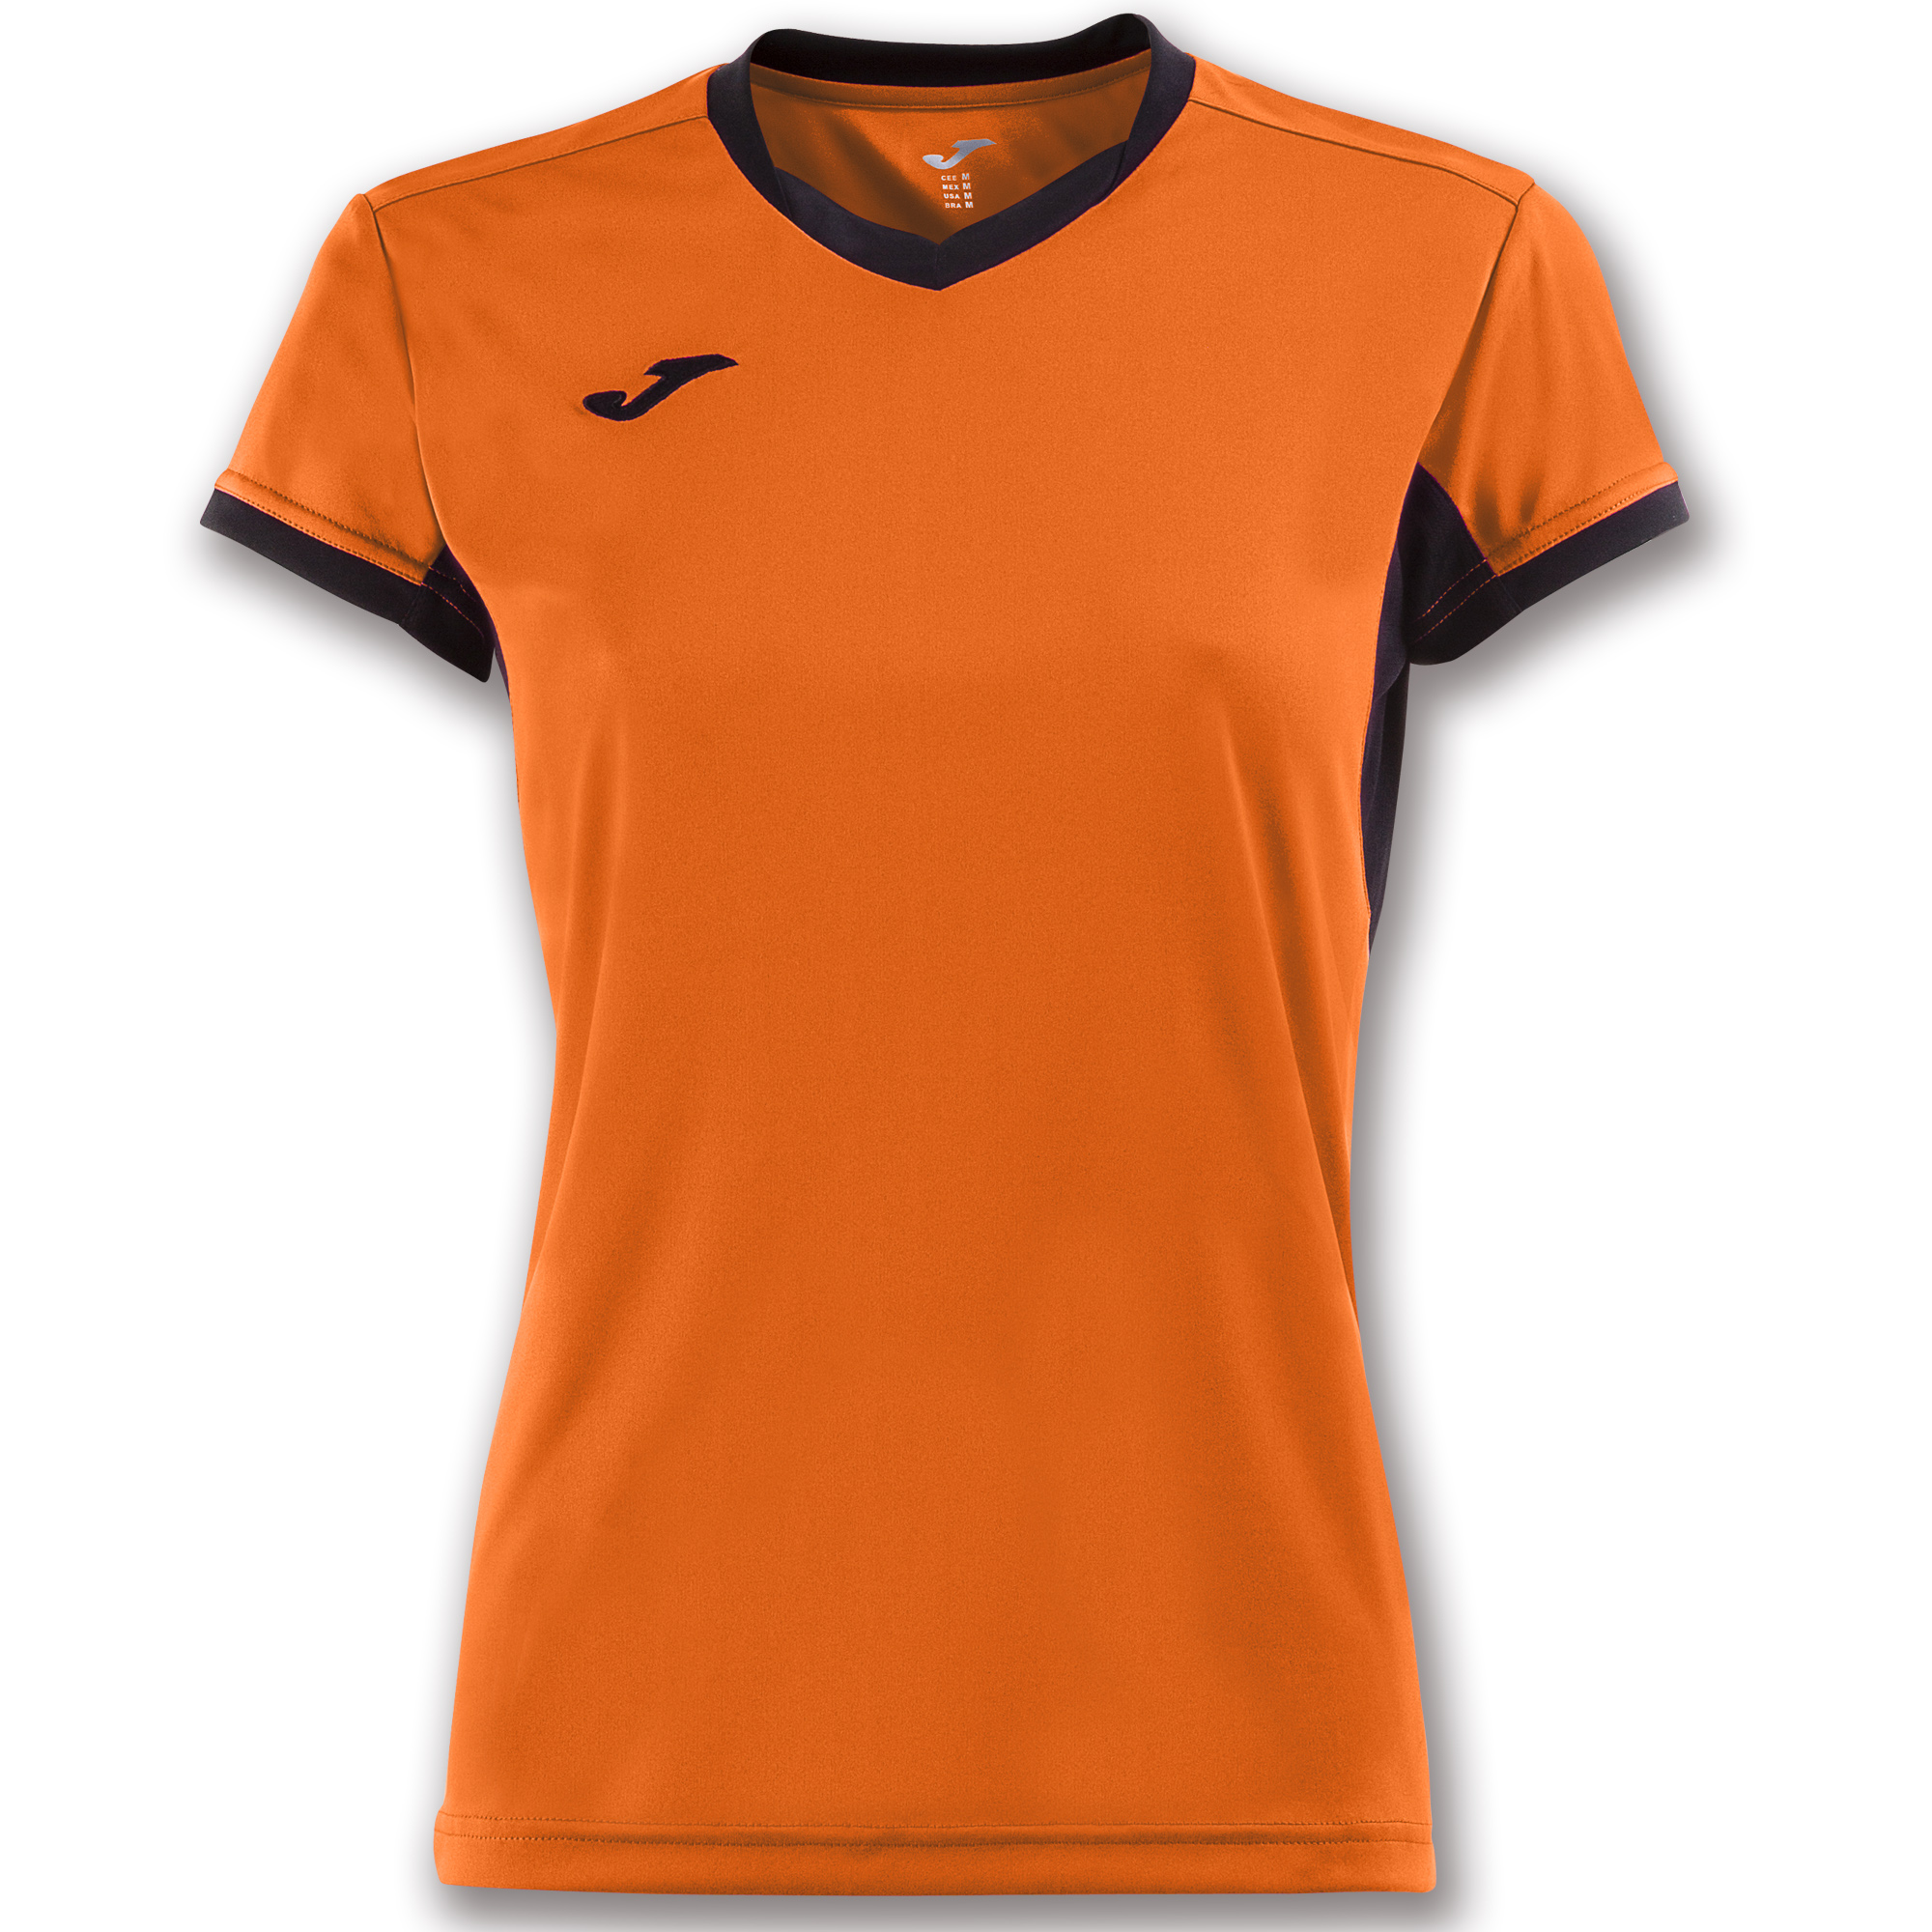 Волейбольная футболка женская Joma CHAMPION IV Оранжевый/Черный